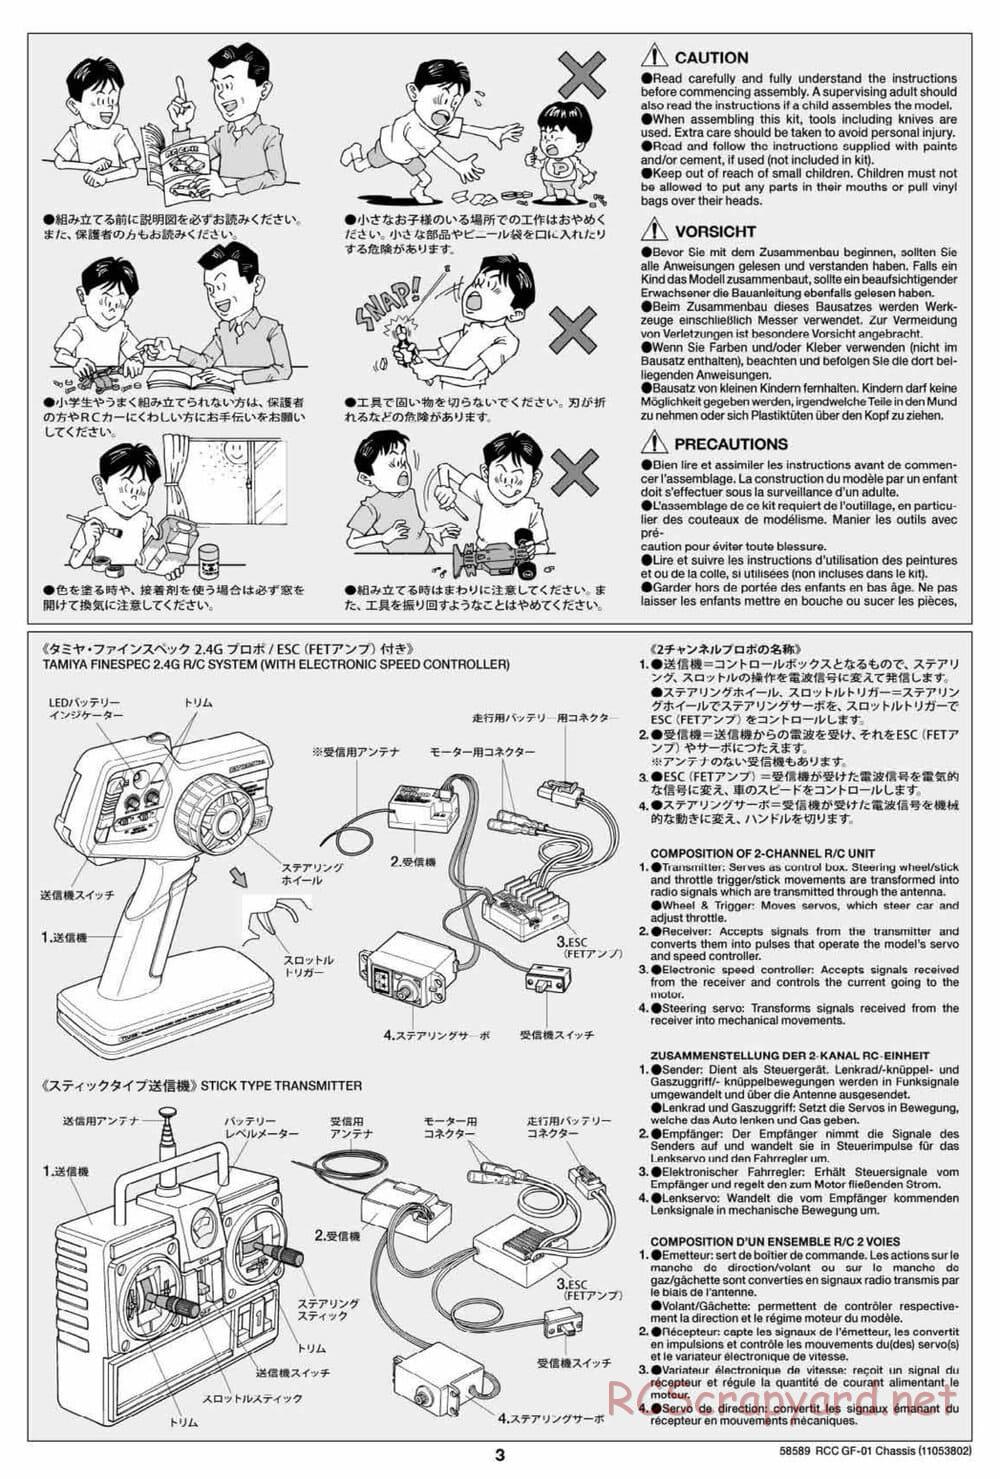 Tamiya - GF-01 Chassis - Manual - Page 3